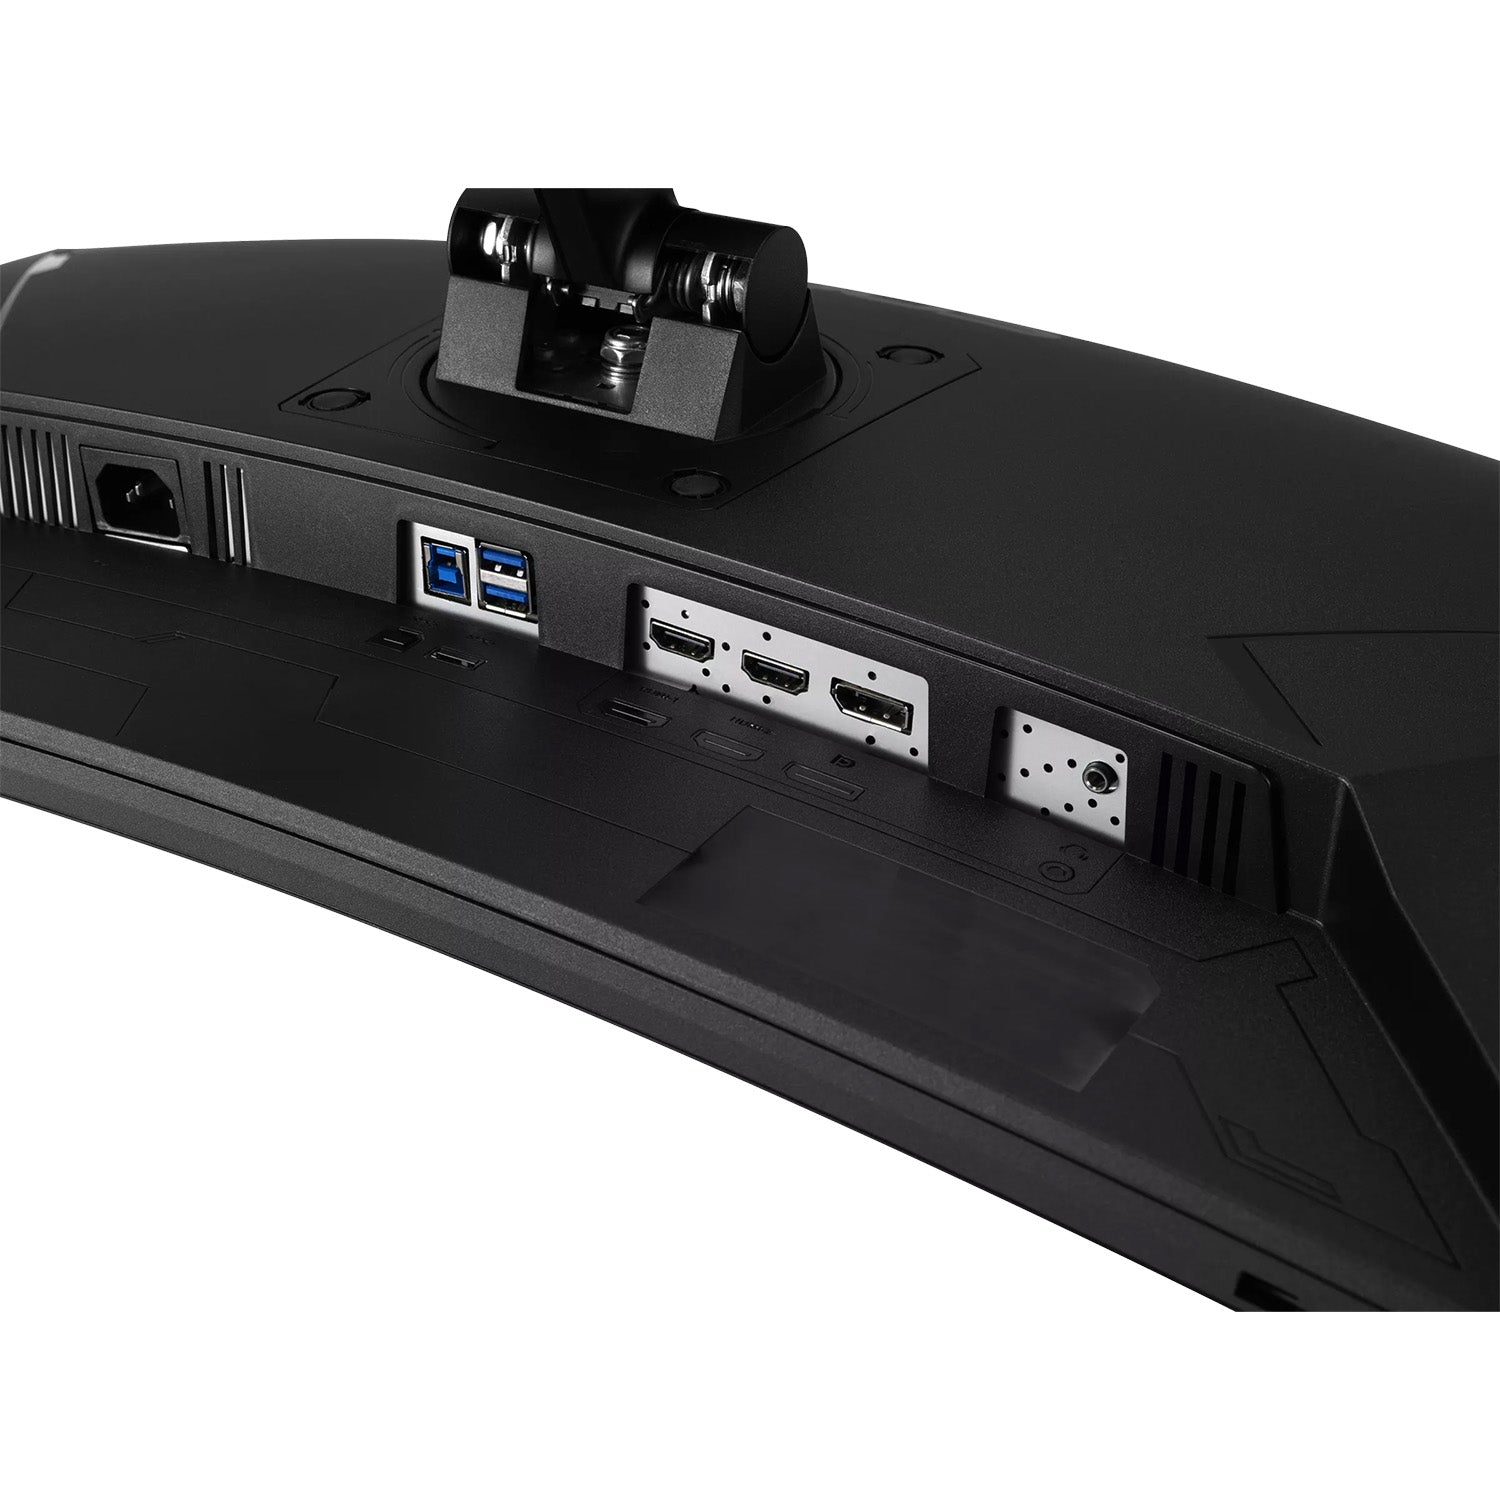 ASUS TUF Gaming VG30VQL1A QHD, HDR, panneau 200 Hz